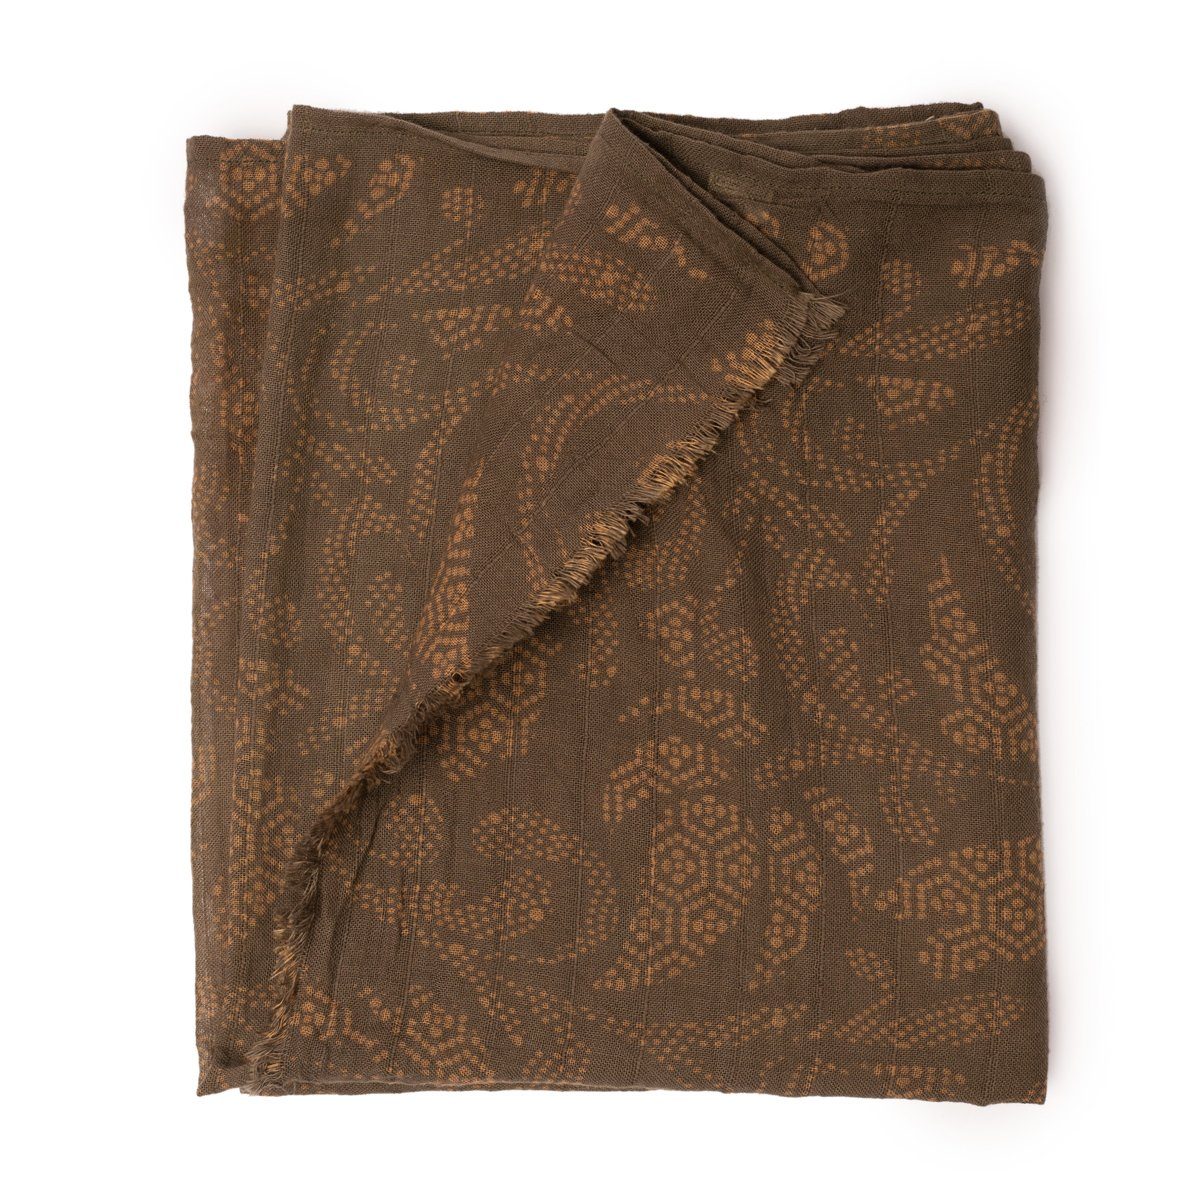 PANASIAM Halstuch elegantes Schaltuch auch als Schultertuch Schal oder Stola tragbar, in schönen farbigen Designs mit kleinen Fransen aus Baumwolle Taupe Indonesien